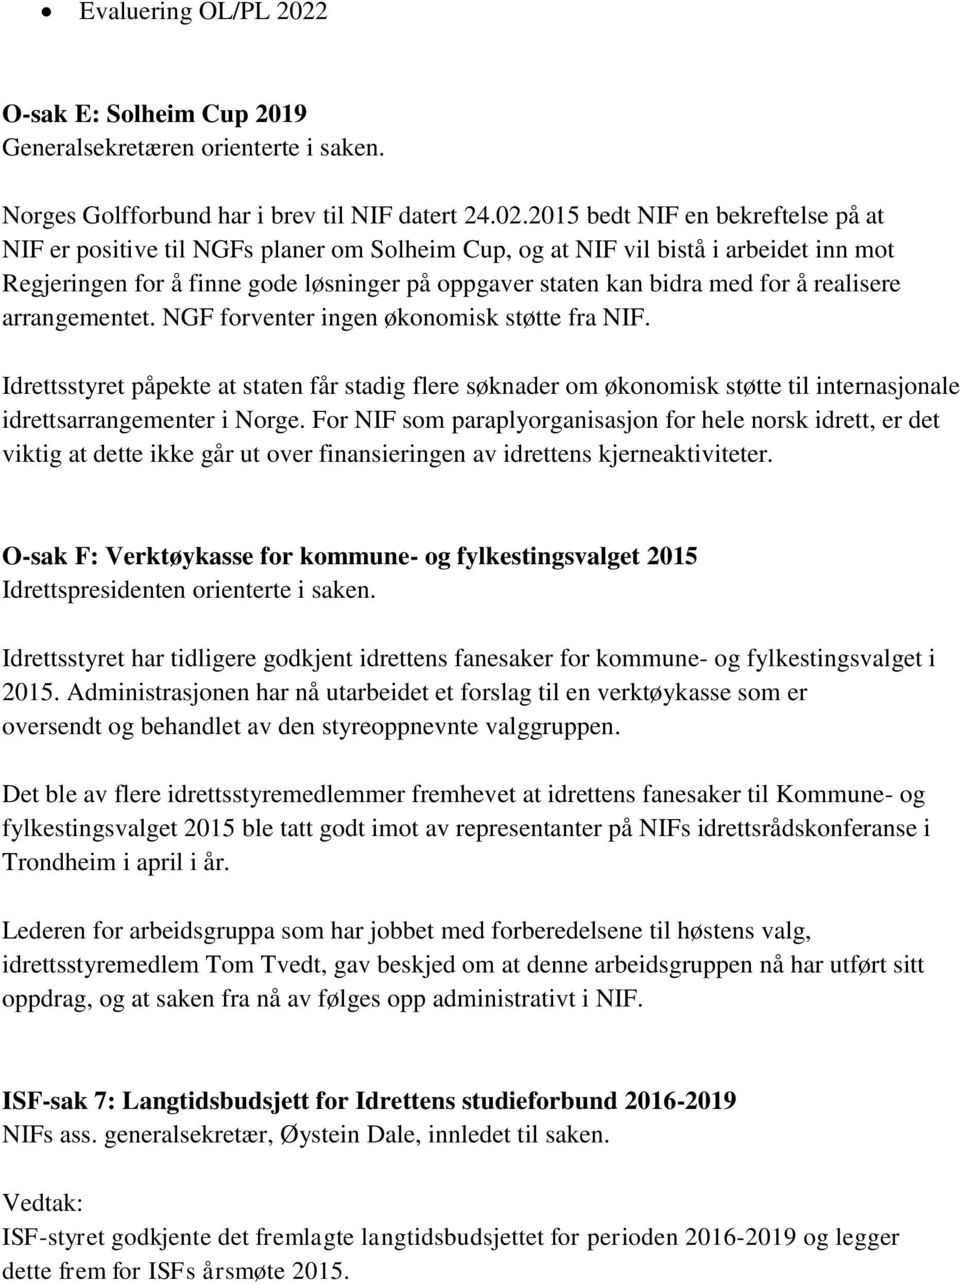 2015 bedt NIF en bekreftelse på at NIF er positive til NGFs planer om Solheim Cup, og at NIF vil bistå i arbeidet inn mot Regjeringen for å finne gode løsninger på oppgaver staten kan bidra med for å